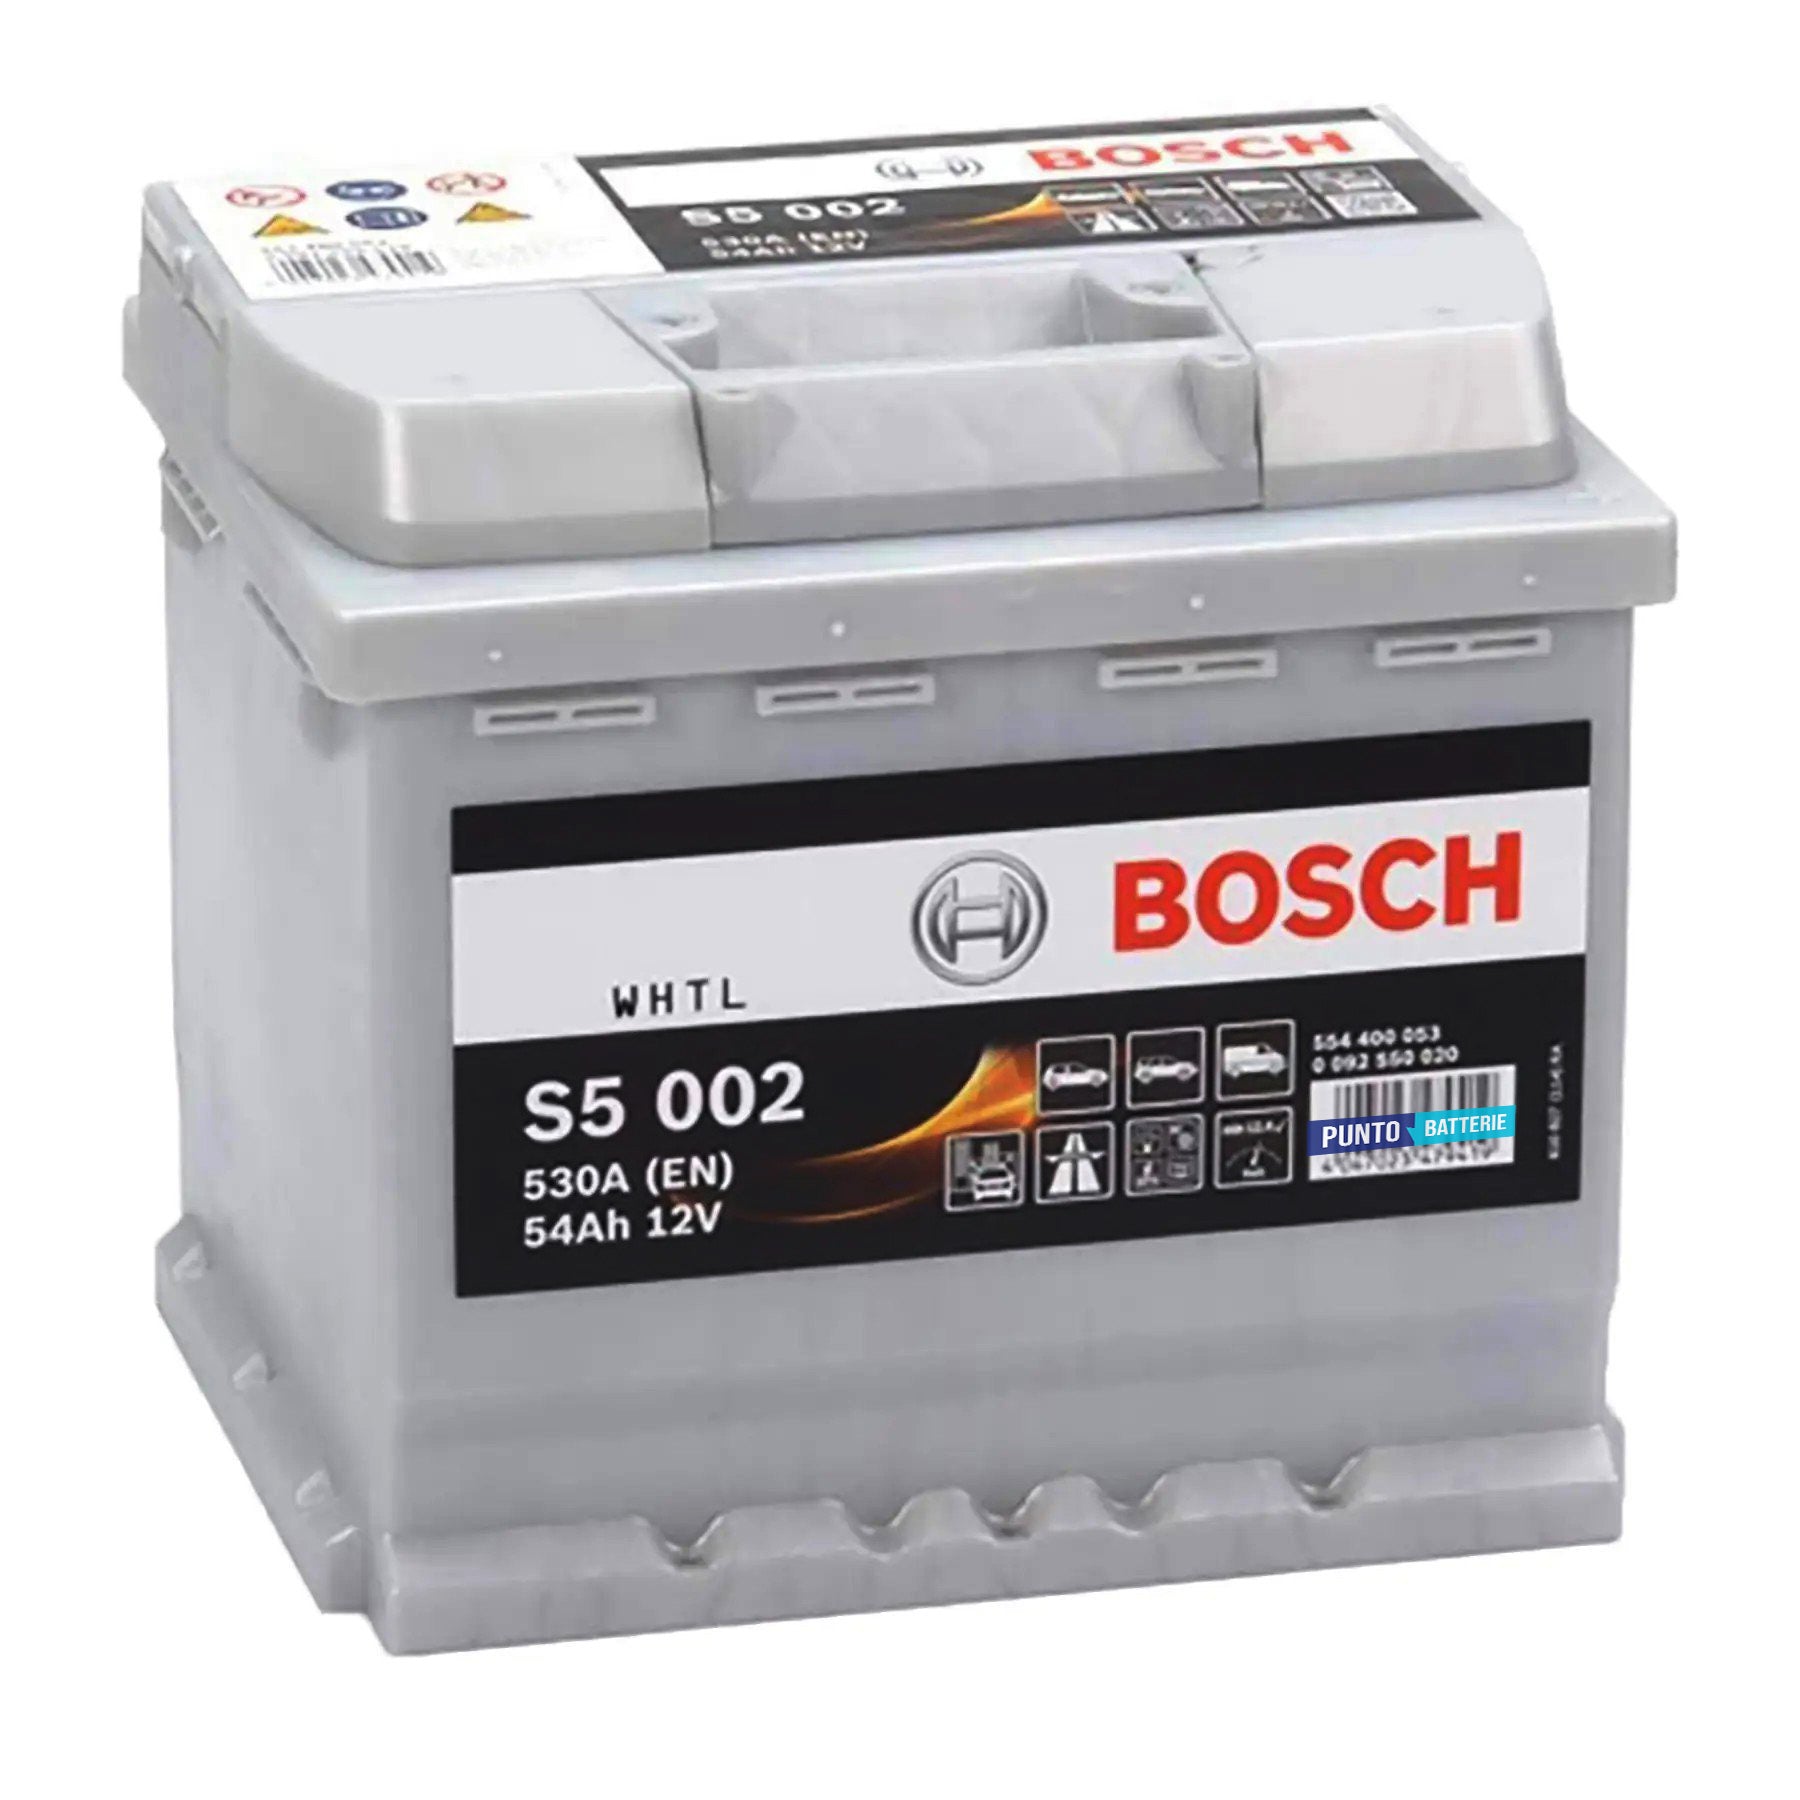 Batteria originale Bosch S5 S5 002, dimensioni 207 x 175 x 190, polo positivo a destra, 12 volt, 54 amperora, 530 ampere. Batteria per auto e veicoli leggeri.